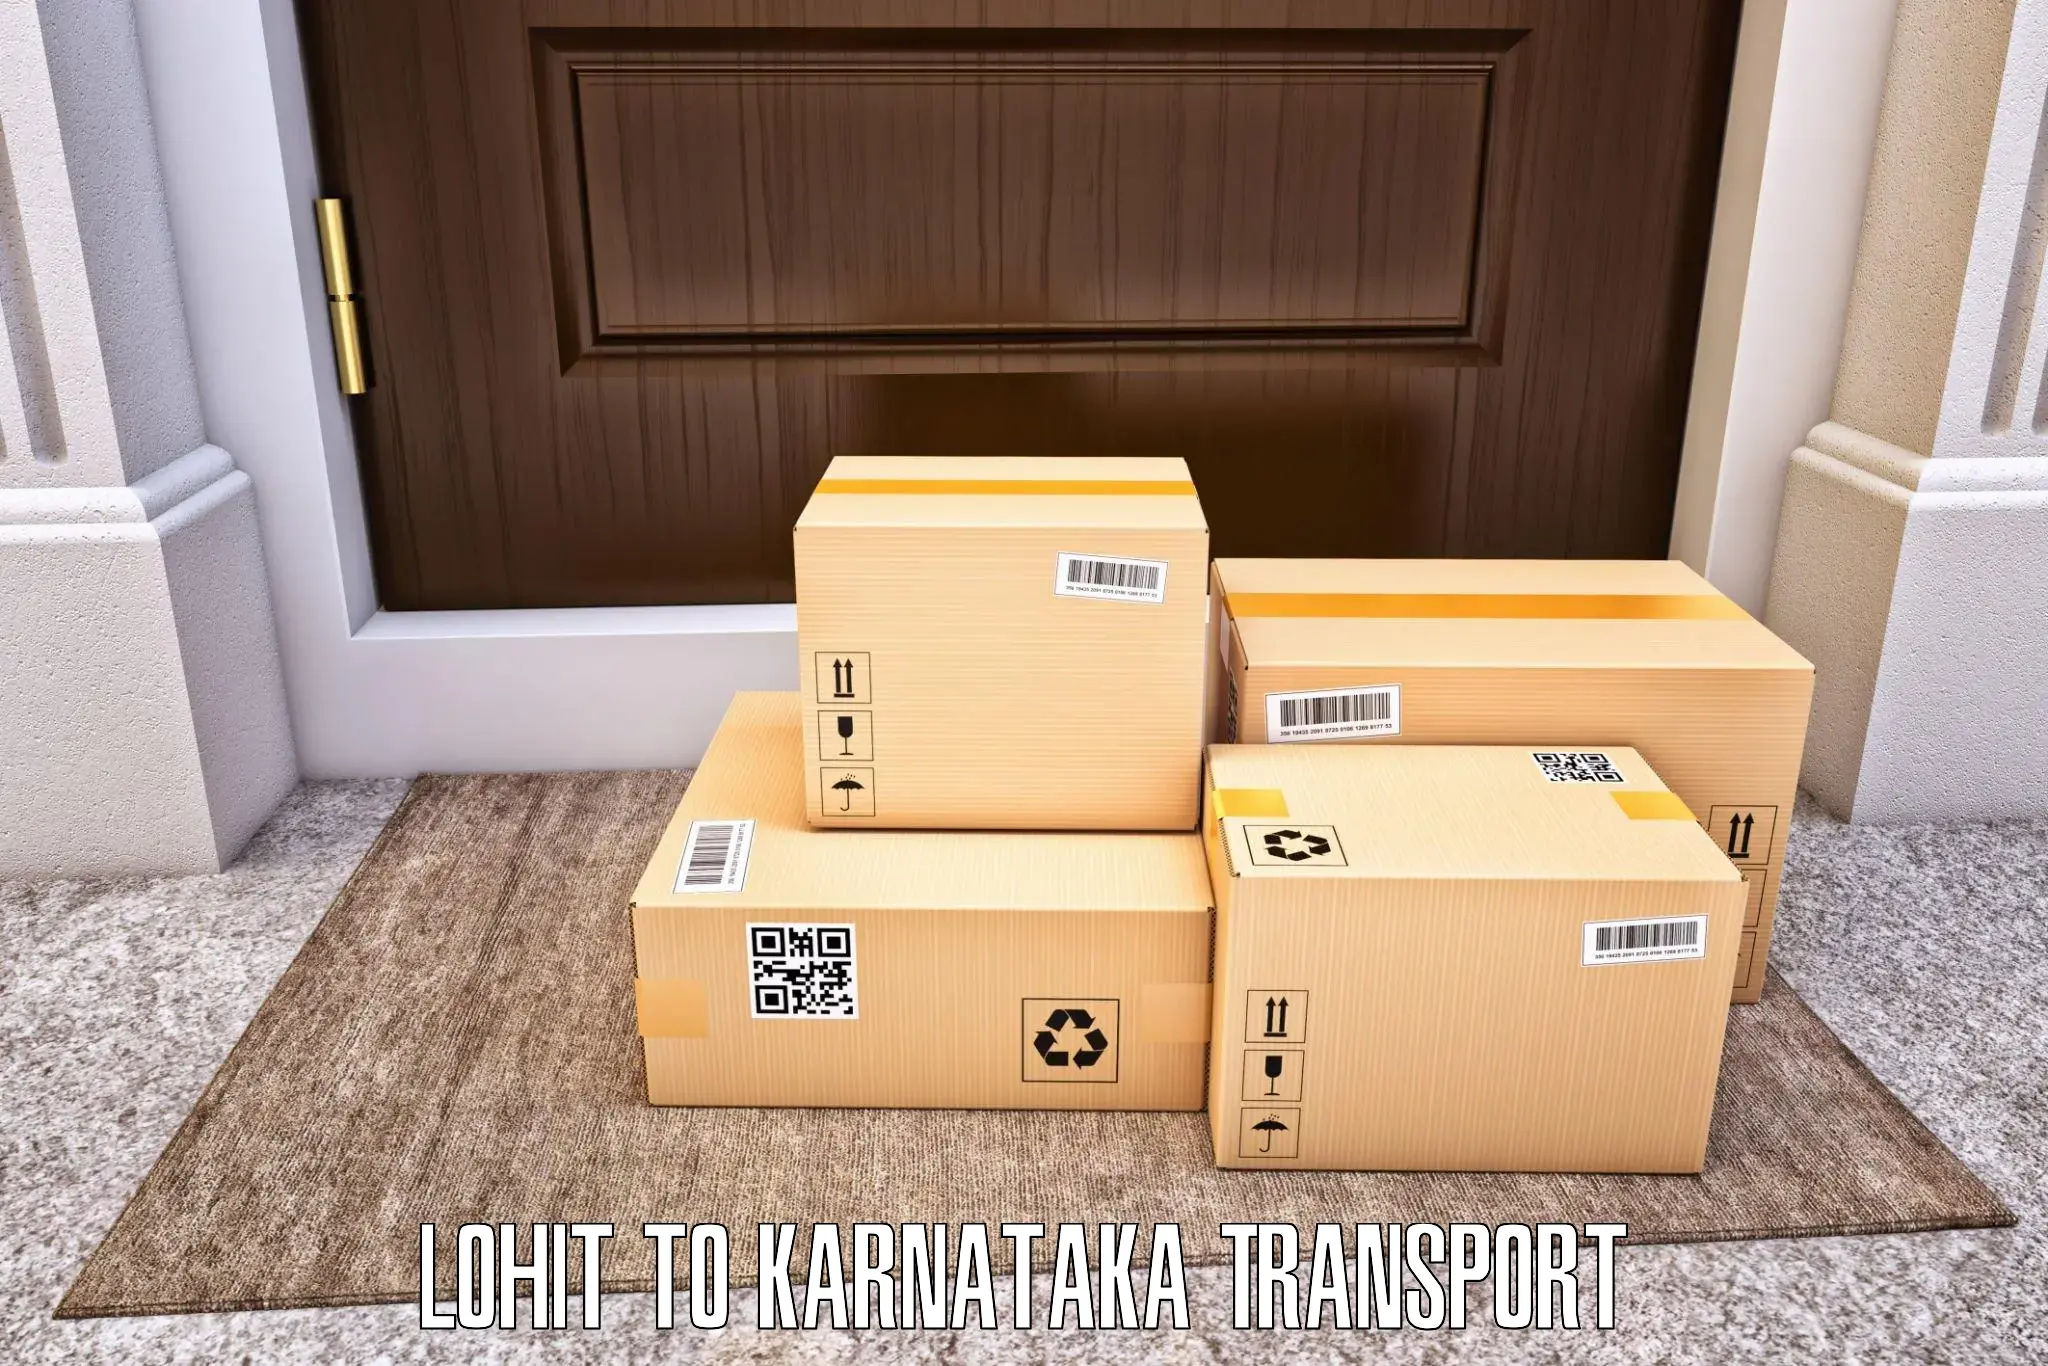 Vehicle parcel service Lohit to Lingasugur